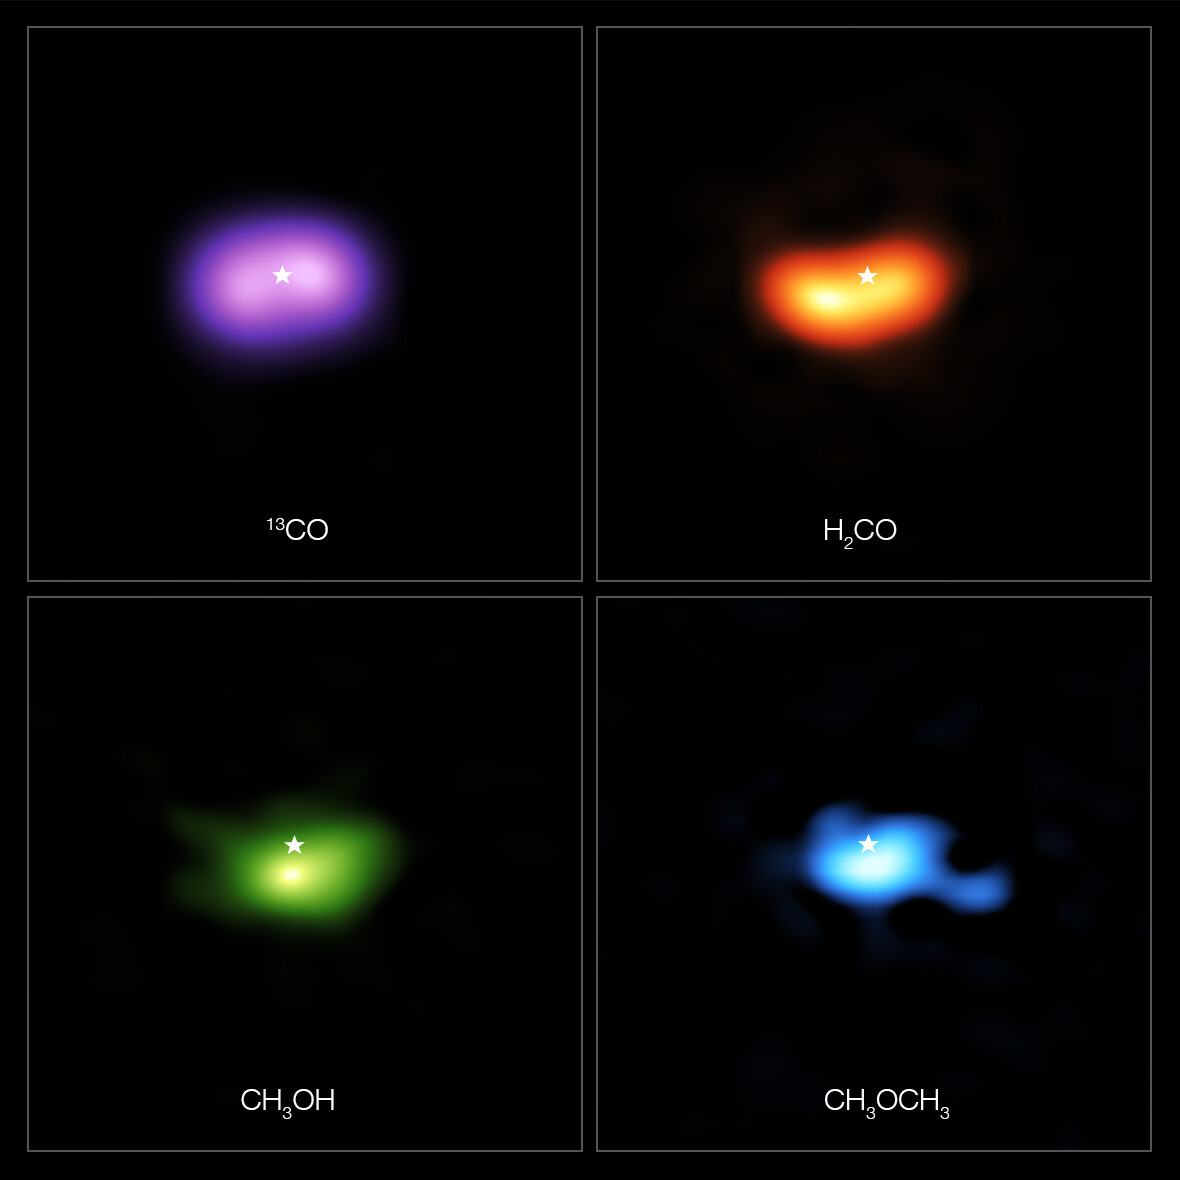 Estas imágenes del Atacama Large Millimeter/submillimeter Array (ALMA) muestran dónde se detectaron varias moléculas de gas en el disco que hay alrededor de la estrella IRS 48, también conocida como Oph-IRS 48. El disco contiene una región en forma de anacardos en su parte sur que atrapa granos de polvo de tamaño milimétrico- estos granos pueden unirse y convertirse en objetos del tamaño de un kilómetro como cometas, asteroides y, potencialmente, incluso planetas. Observaciones recientes detectaron varias moléculas orgánicas complejas en esta región, incluyendo formaldehído (H2CO; naranja), metanol (CH3OH; verde) y dimetil éter (CH3OCH3; azul), siendo esta última la molécula más grande encontrada en un disco de formación planetaria hasta la fecha. La emisión que indica la presencia de estas moléculas es claramente más fuerte en la trampa de polvo del disco, mientras que el gas de monóxido de carbono (CO; púrpura) está presente en todo el disco de gas. La ubicación de la estrella central está marcada con una estrella en las cuatro imágenes. La trampa de polvo es aproximadamente del mismo tamaño que el área ocupada por la emisión de metanol, que se muestra en la parte inferior izquierda. Crédito: ALMA (ESO/NAOJ/NRAO)/A. Pohl, van der Marel et al., Brunken et al.